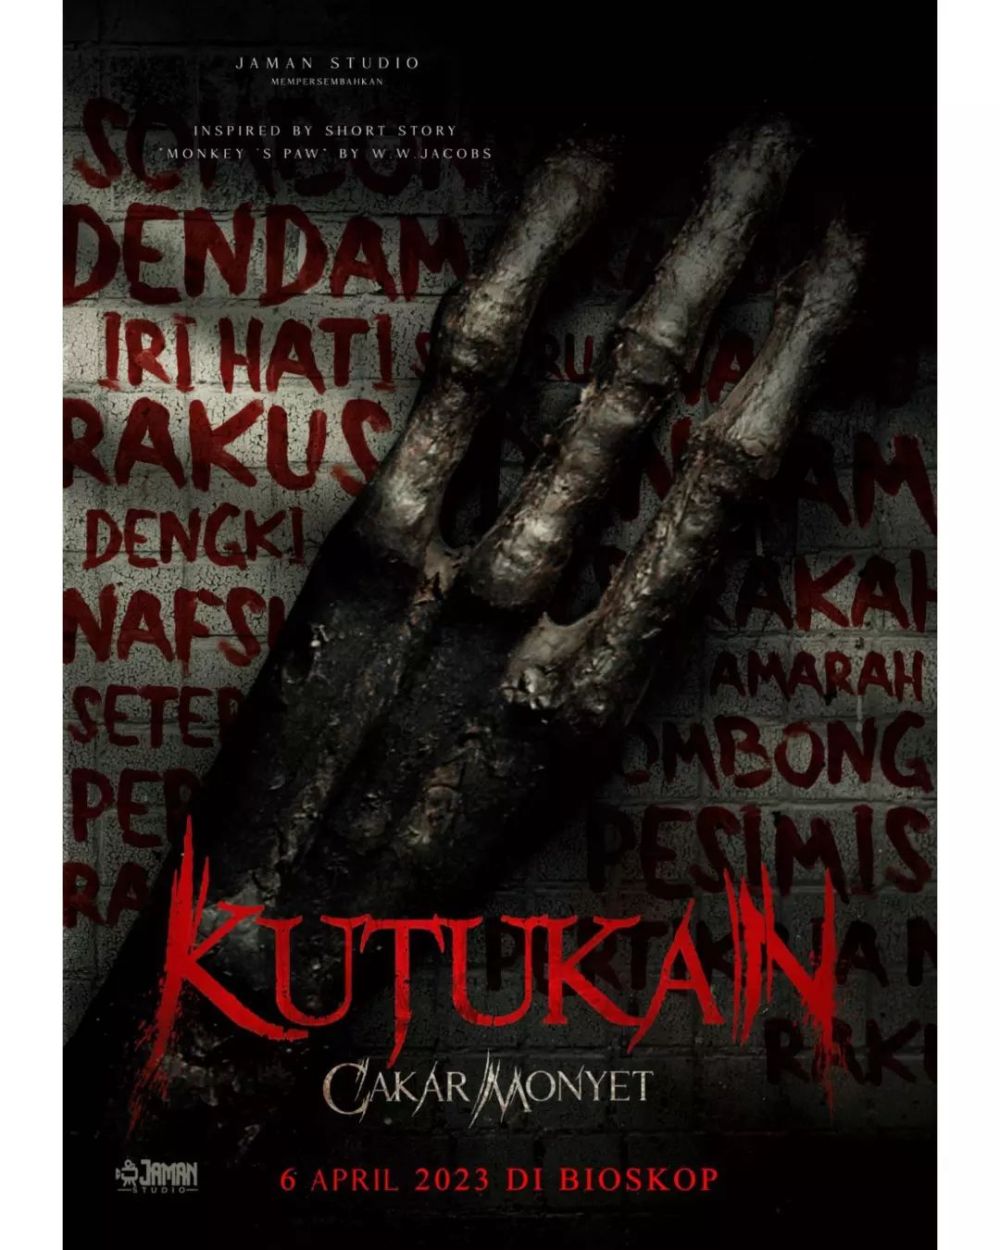 5 Film Indonesia Bergenre Horor Ini Siap Tayang April 2023